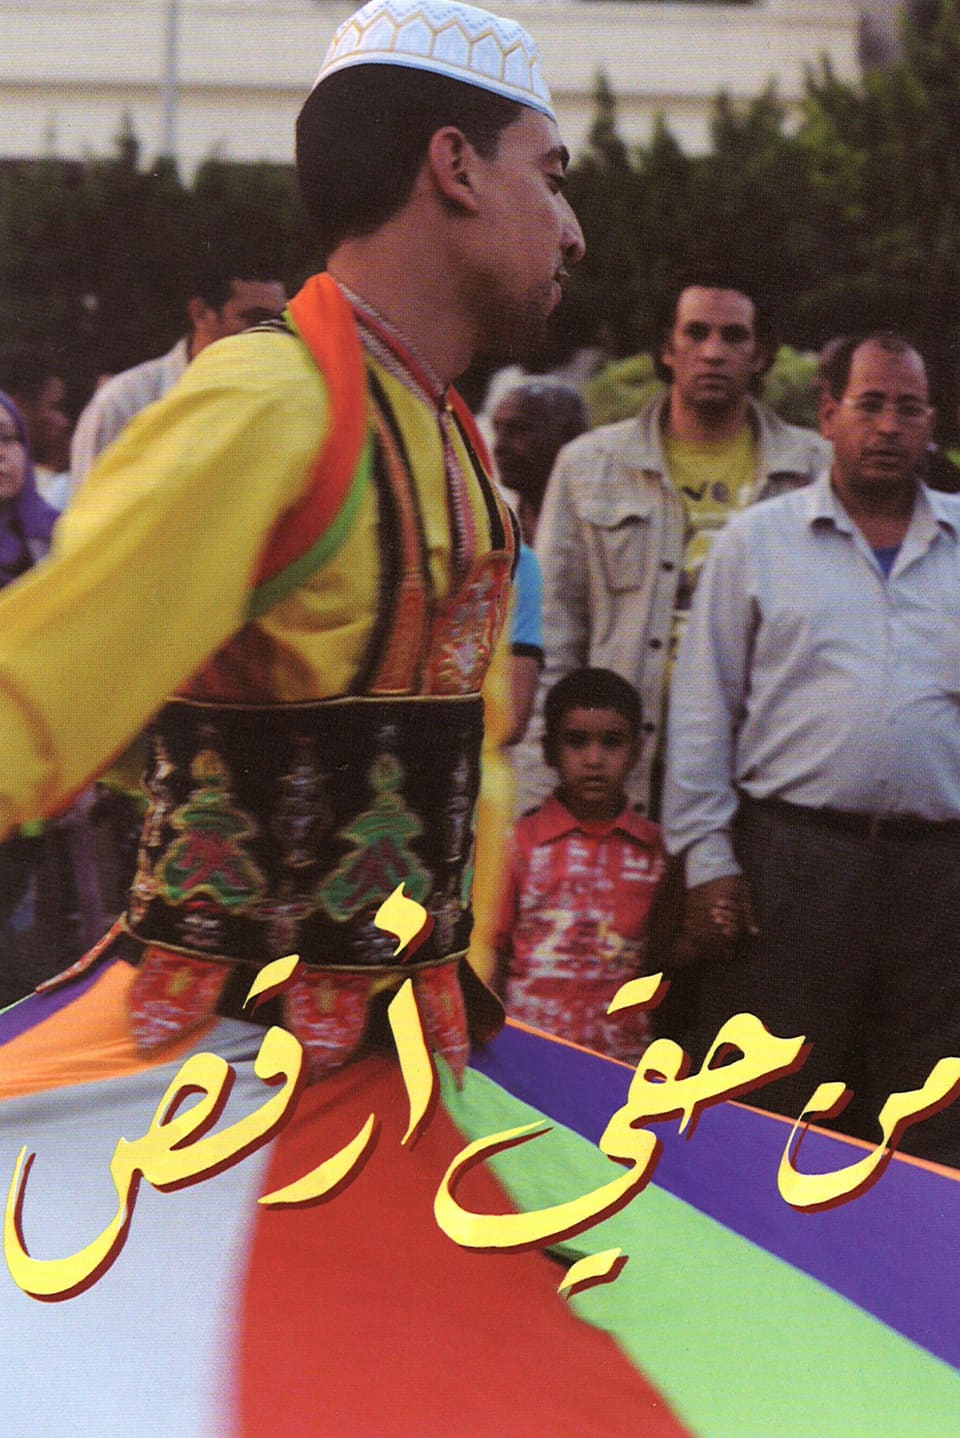 Ausschnitt einer Postkarte, auf der ein Tänzer in traditioneller Kleidung abgebildet ist.